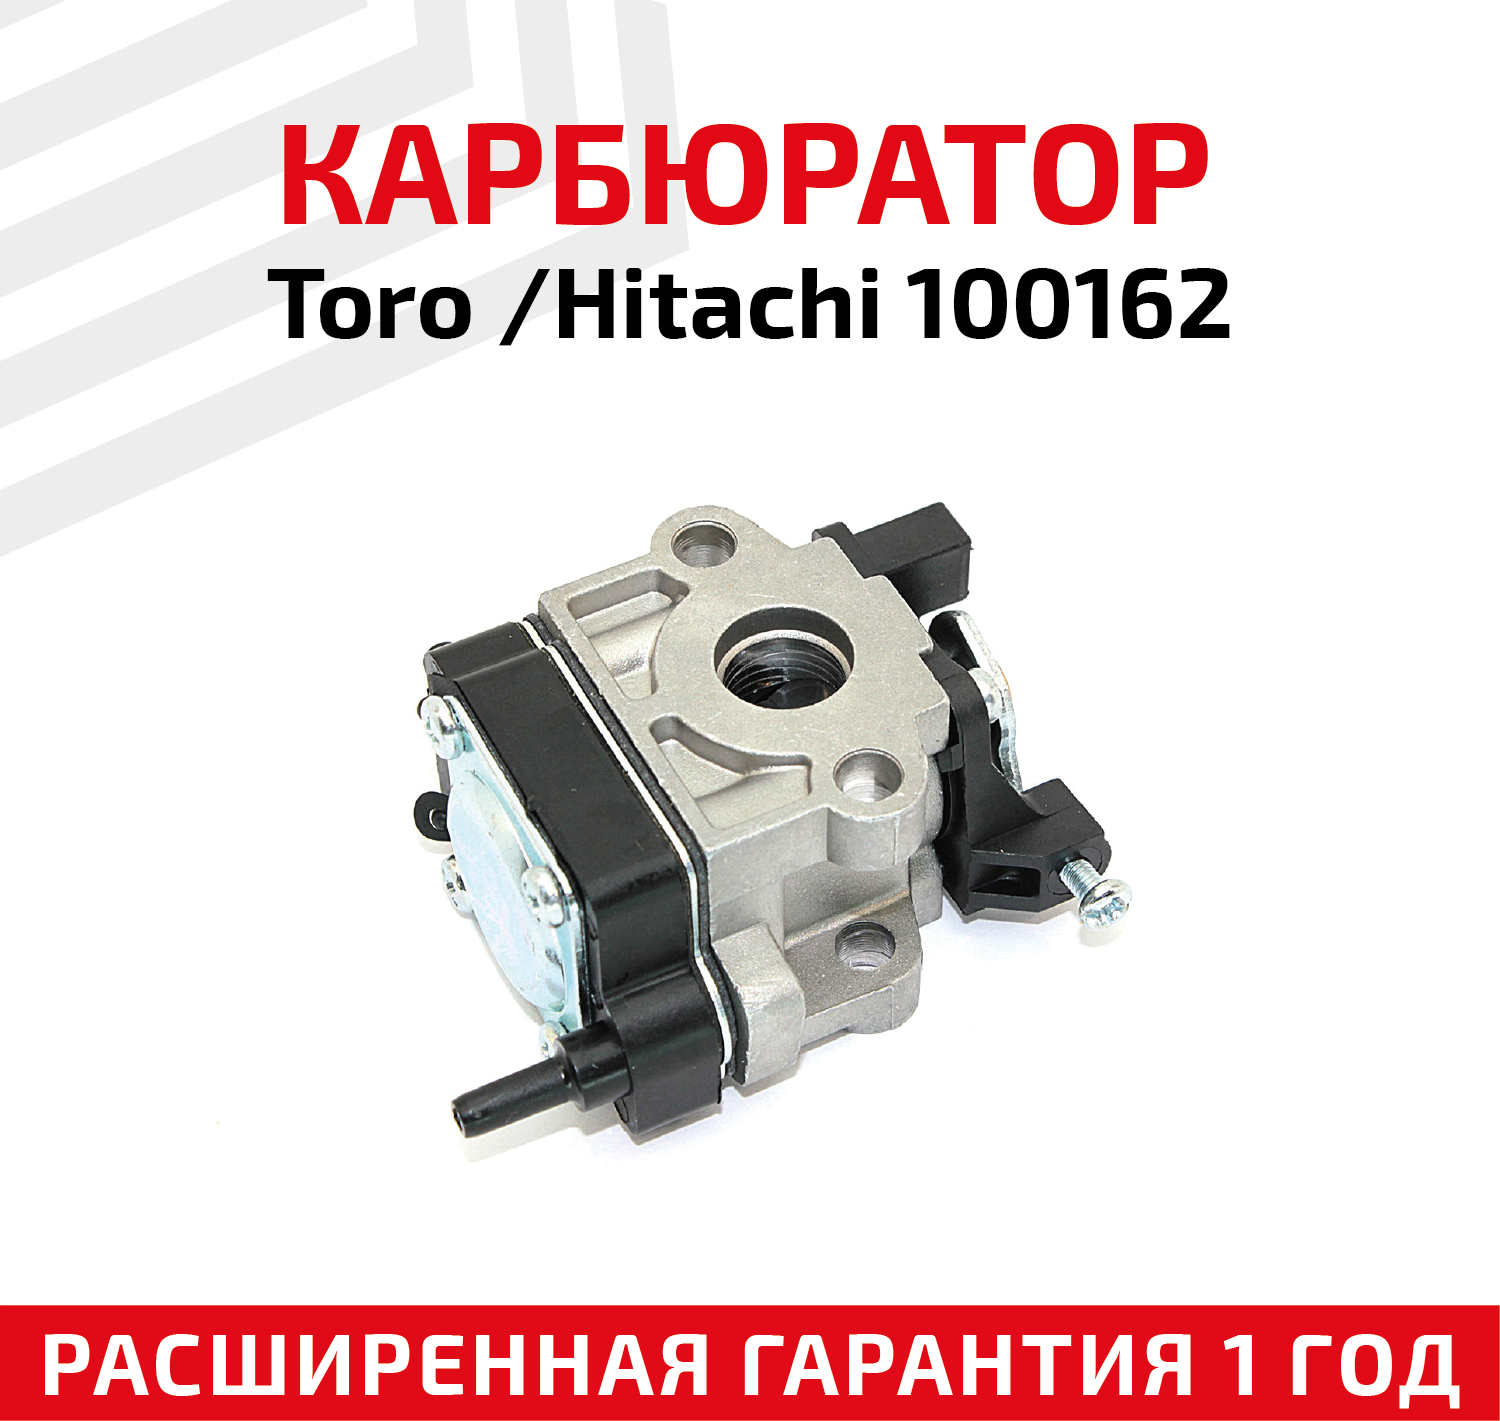 Карбюратор для триммеров Toro/Hitachi 100162